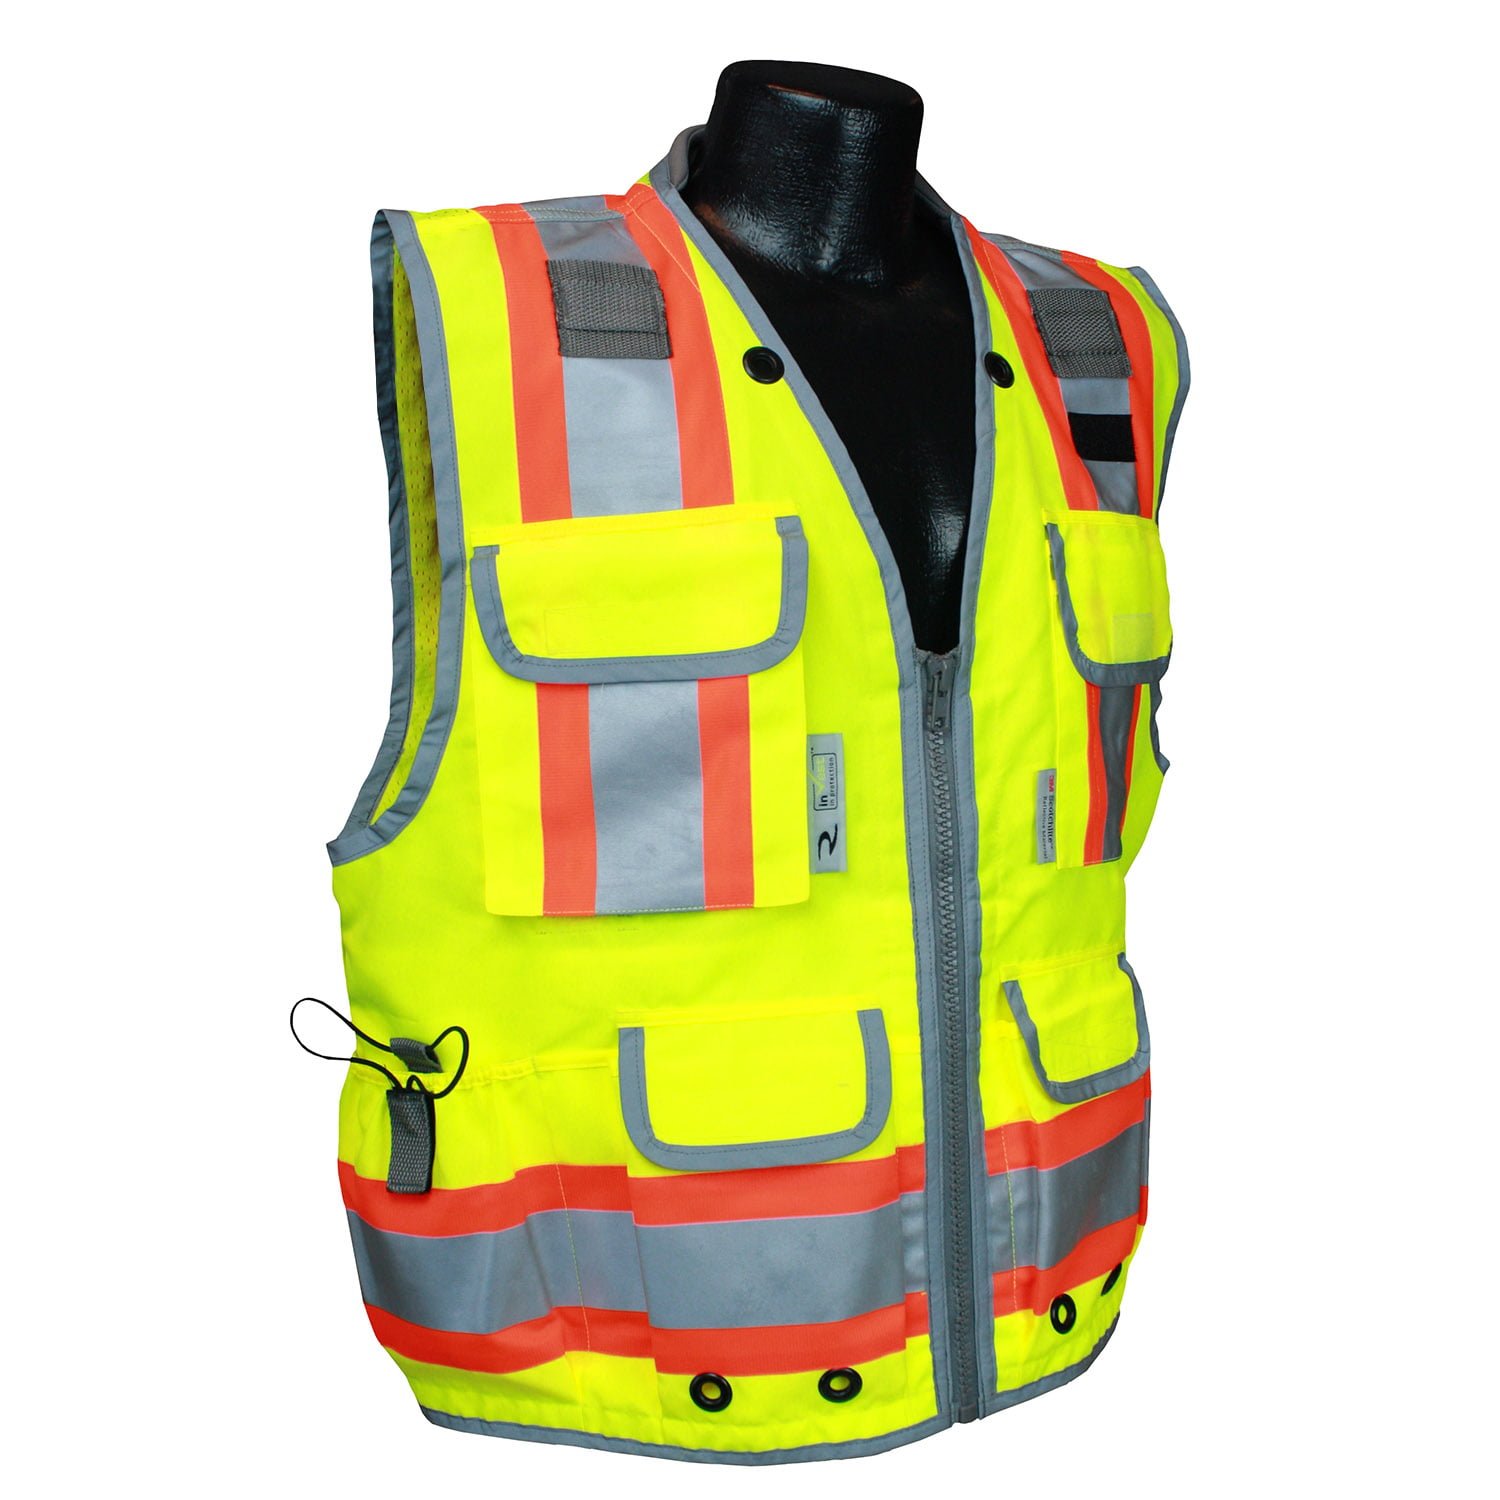 Orange Radians Heavy Duty Class 2 Reflective Surveyor Safety Vest 